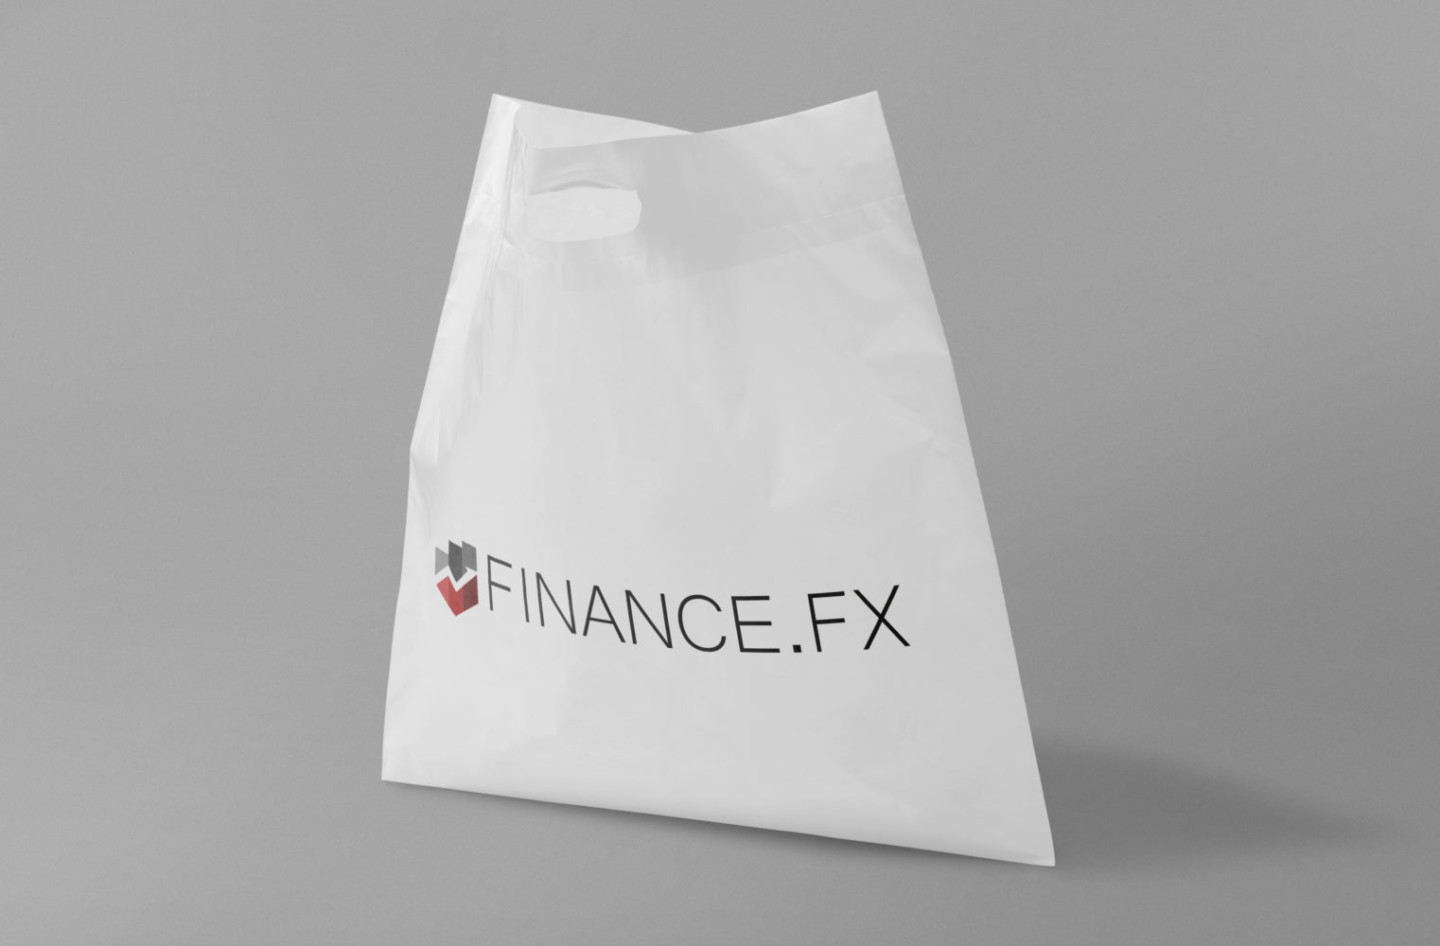 Finance FX